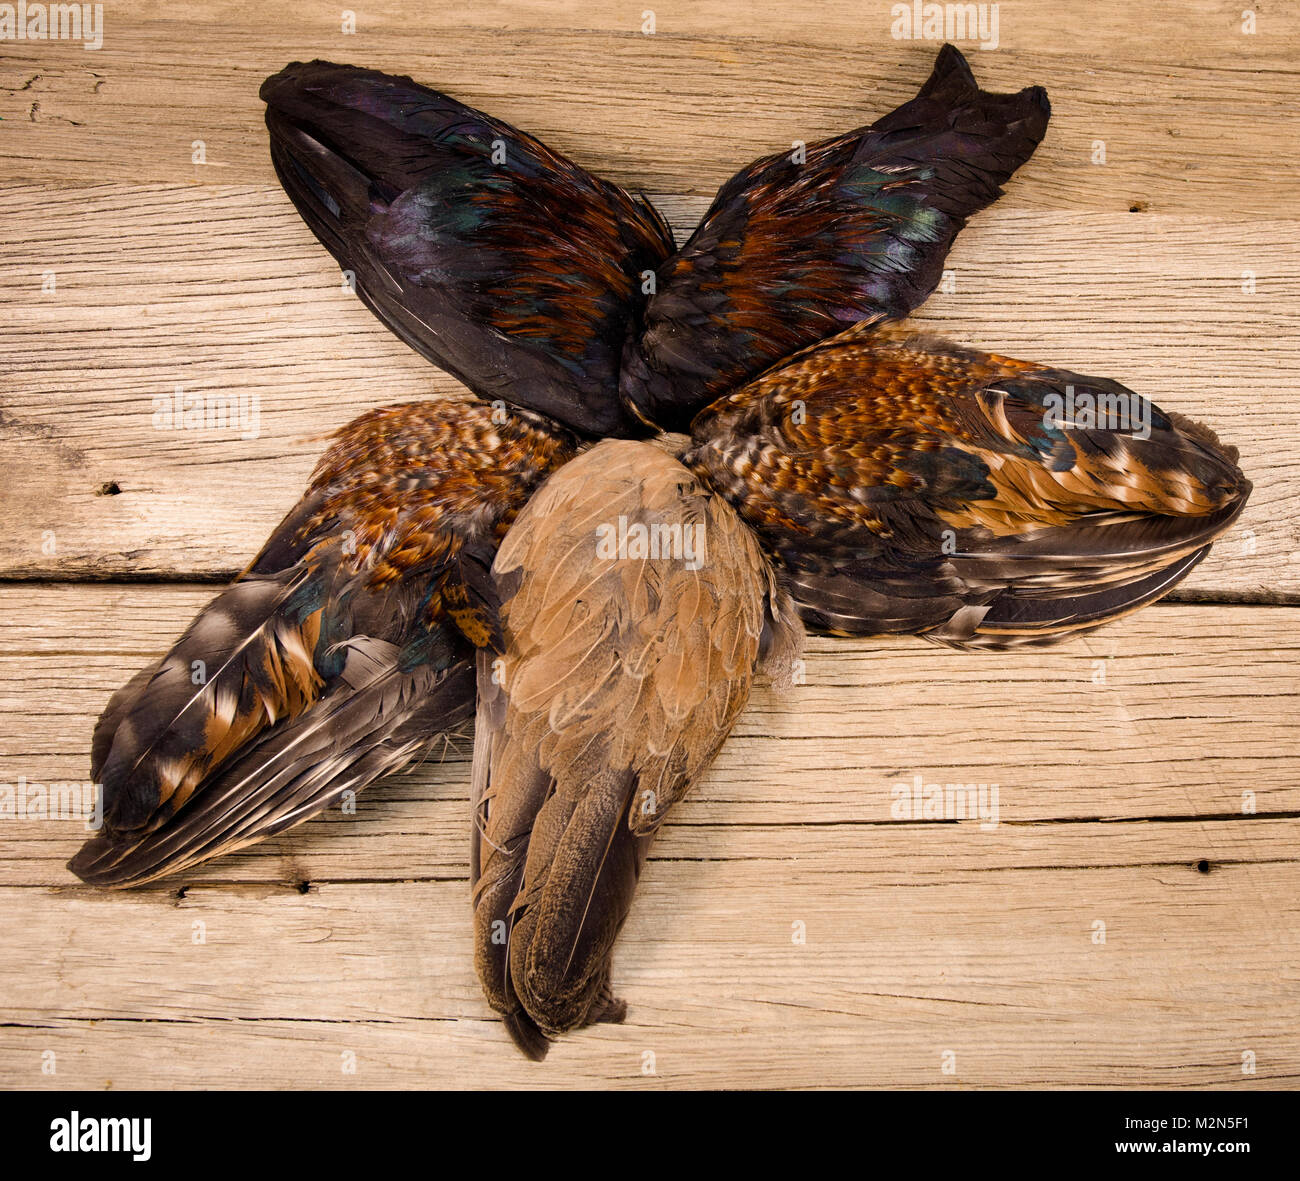 Coq et poule supérieure tectrices des ailes de poulet coq et poule peut être utilisée pour les mouches hackle. Les plumes et les courbes délicates et nicly e Banque D'Images